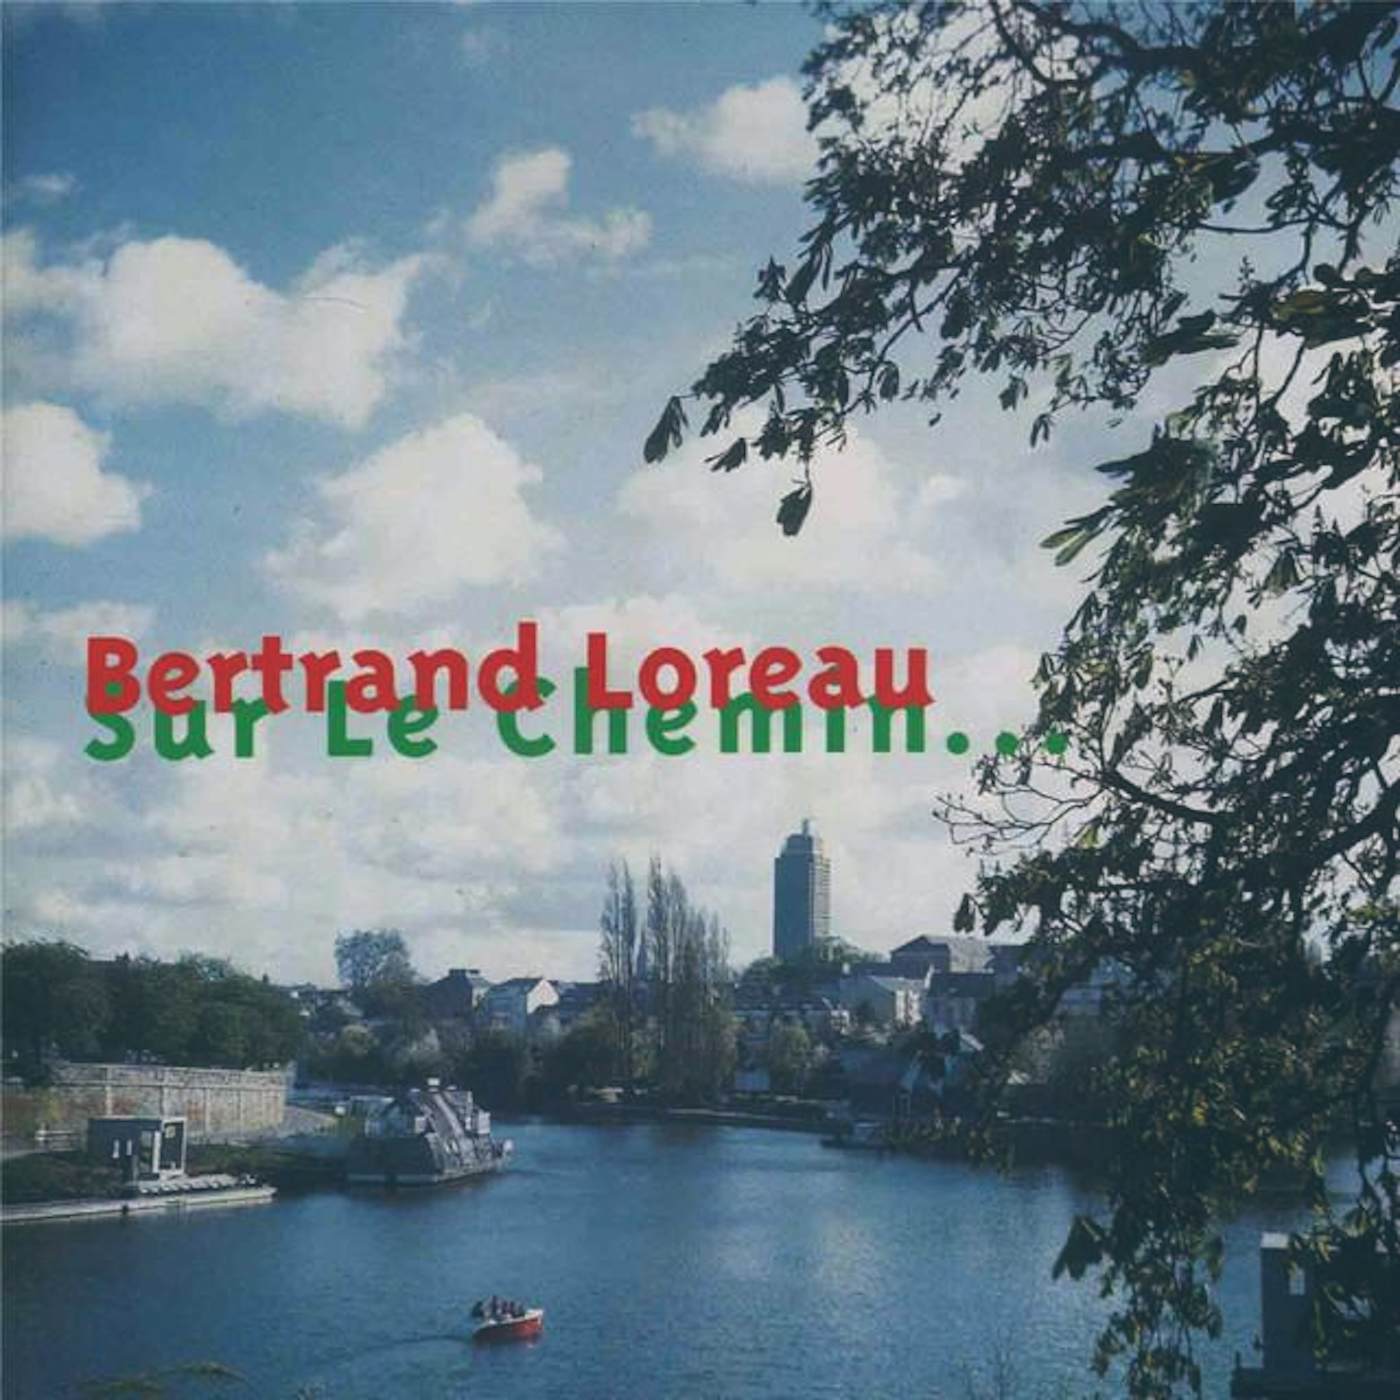 Bertrand Loreau